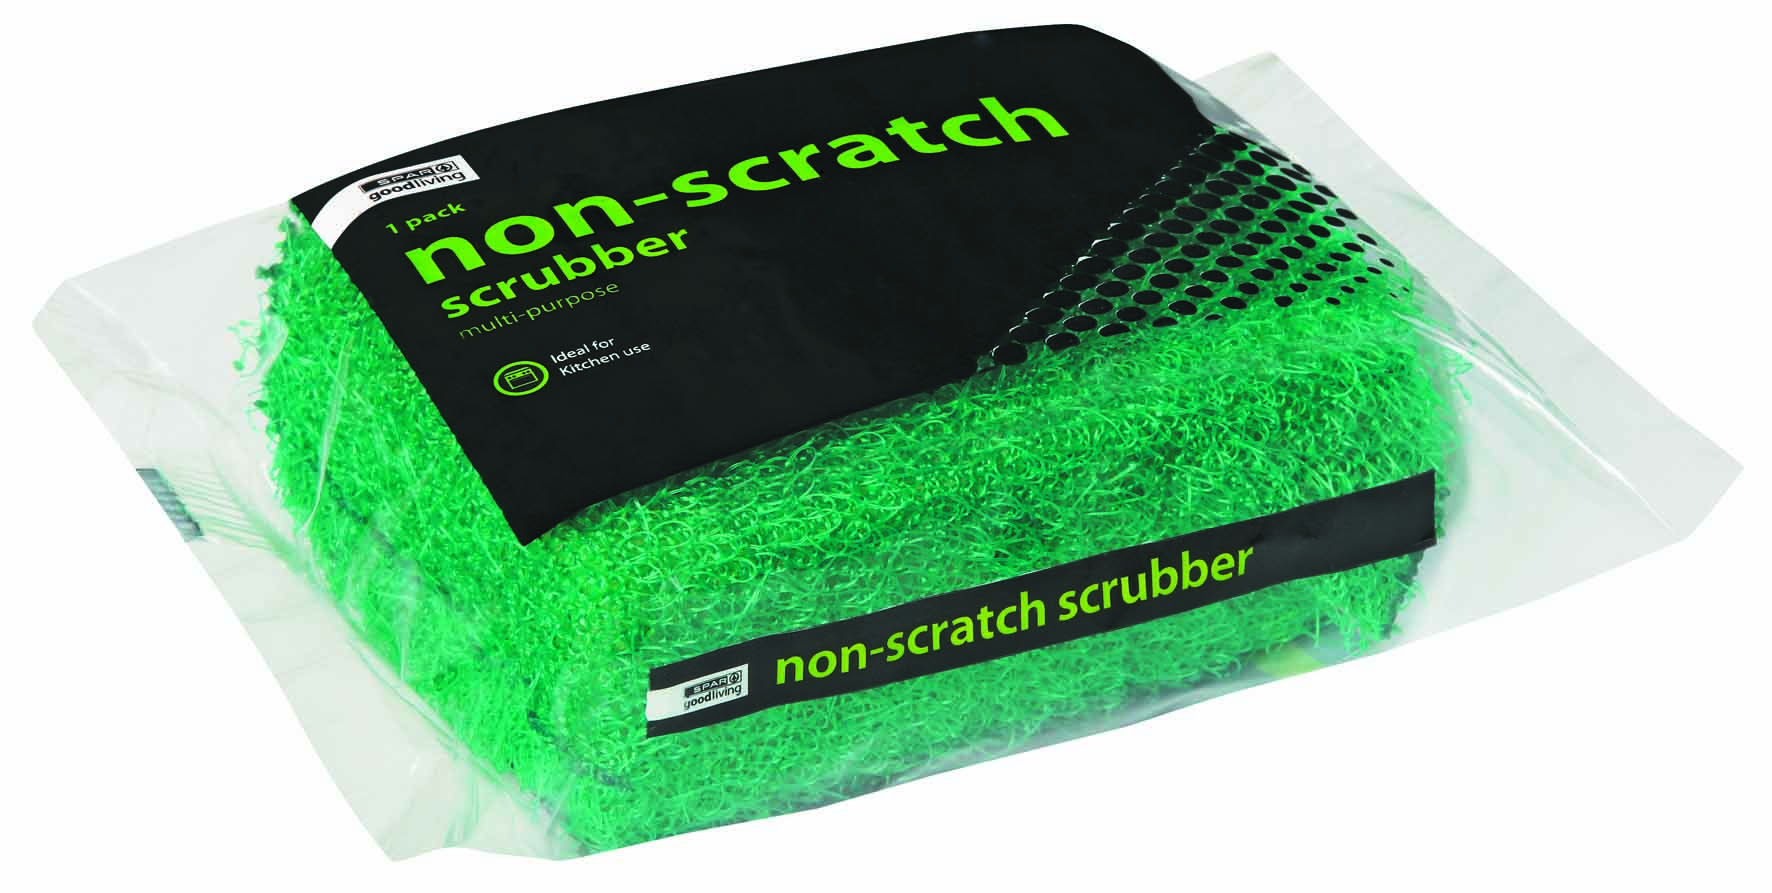 multi-purpose scrubber non-scratch - 1 pack